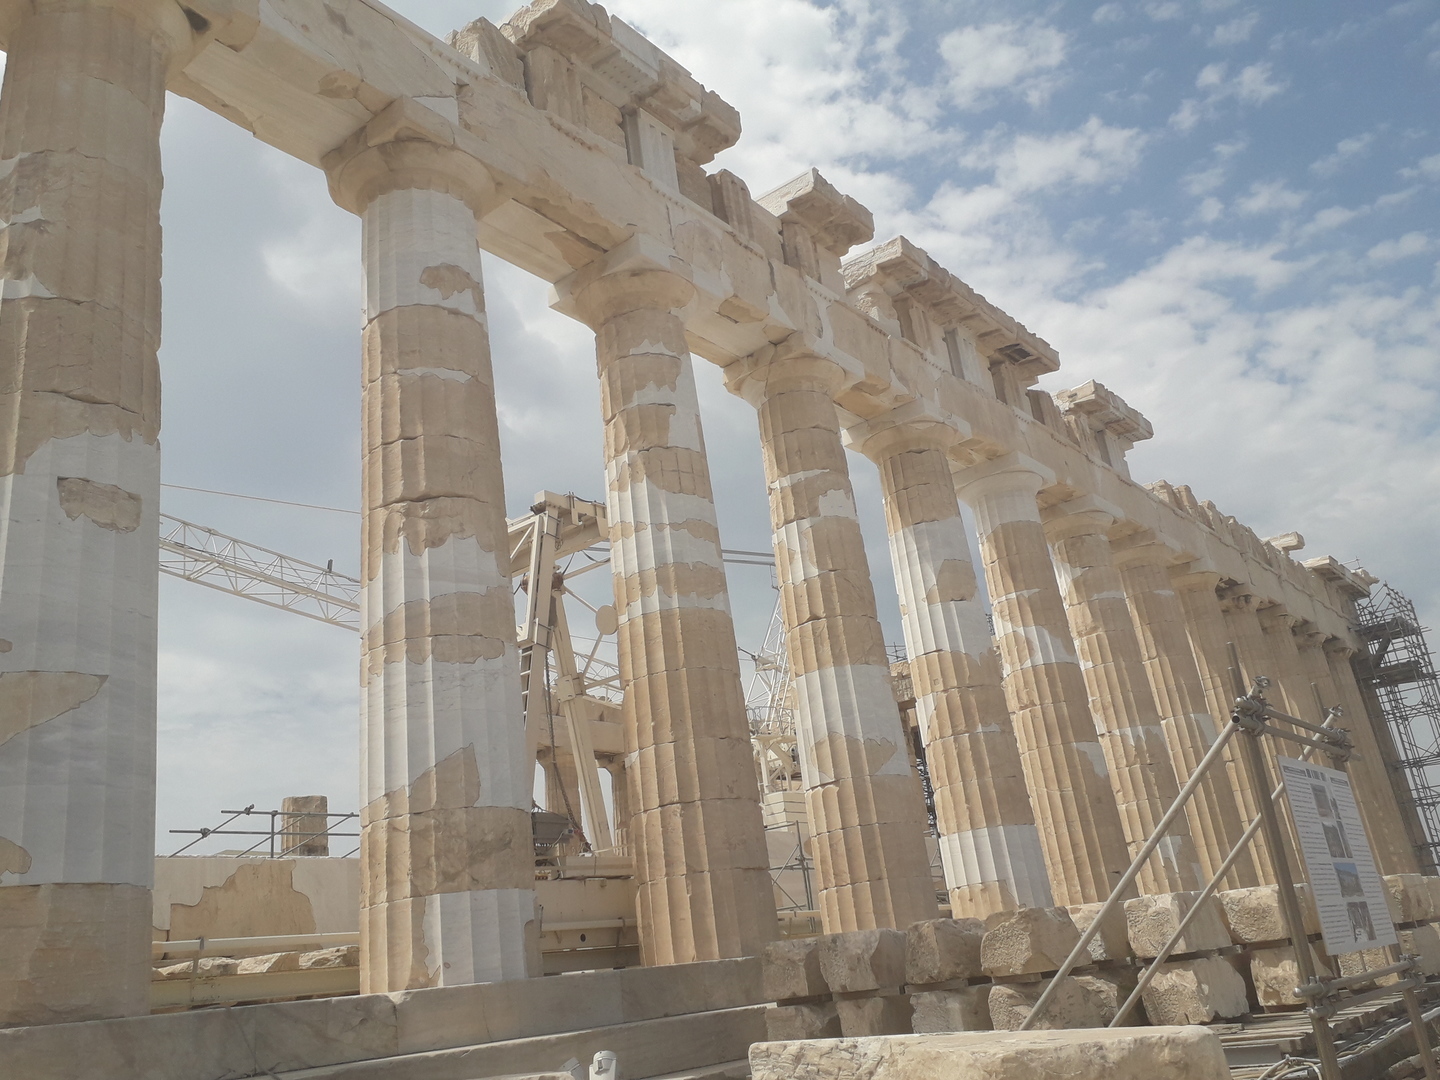 Temple en rénovation avec vue sur les colonnes latérales